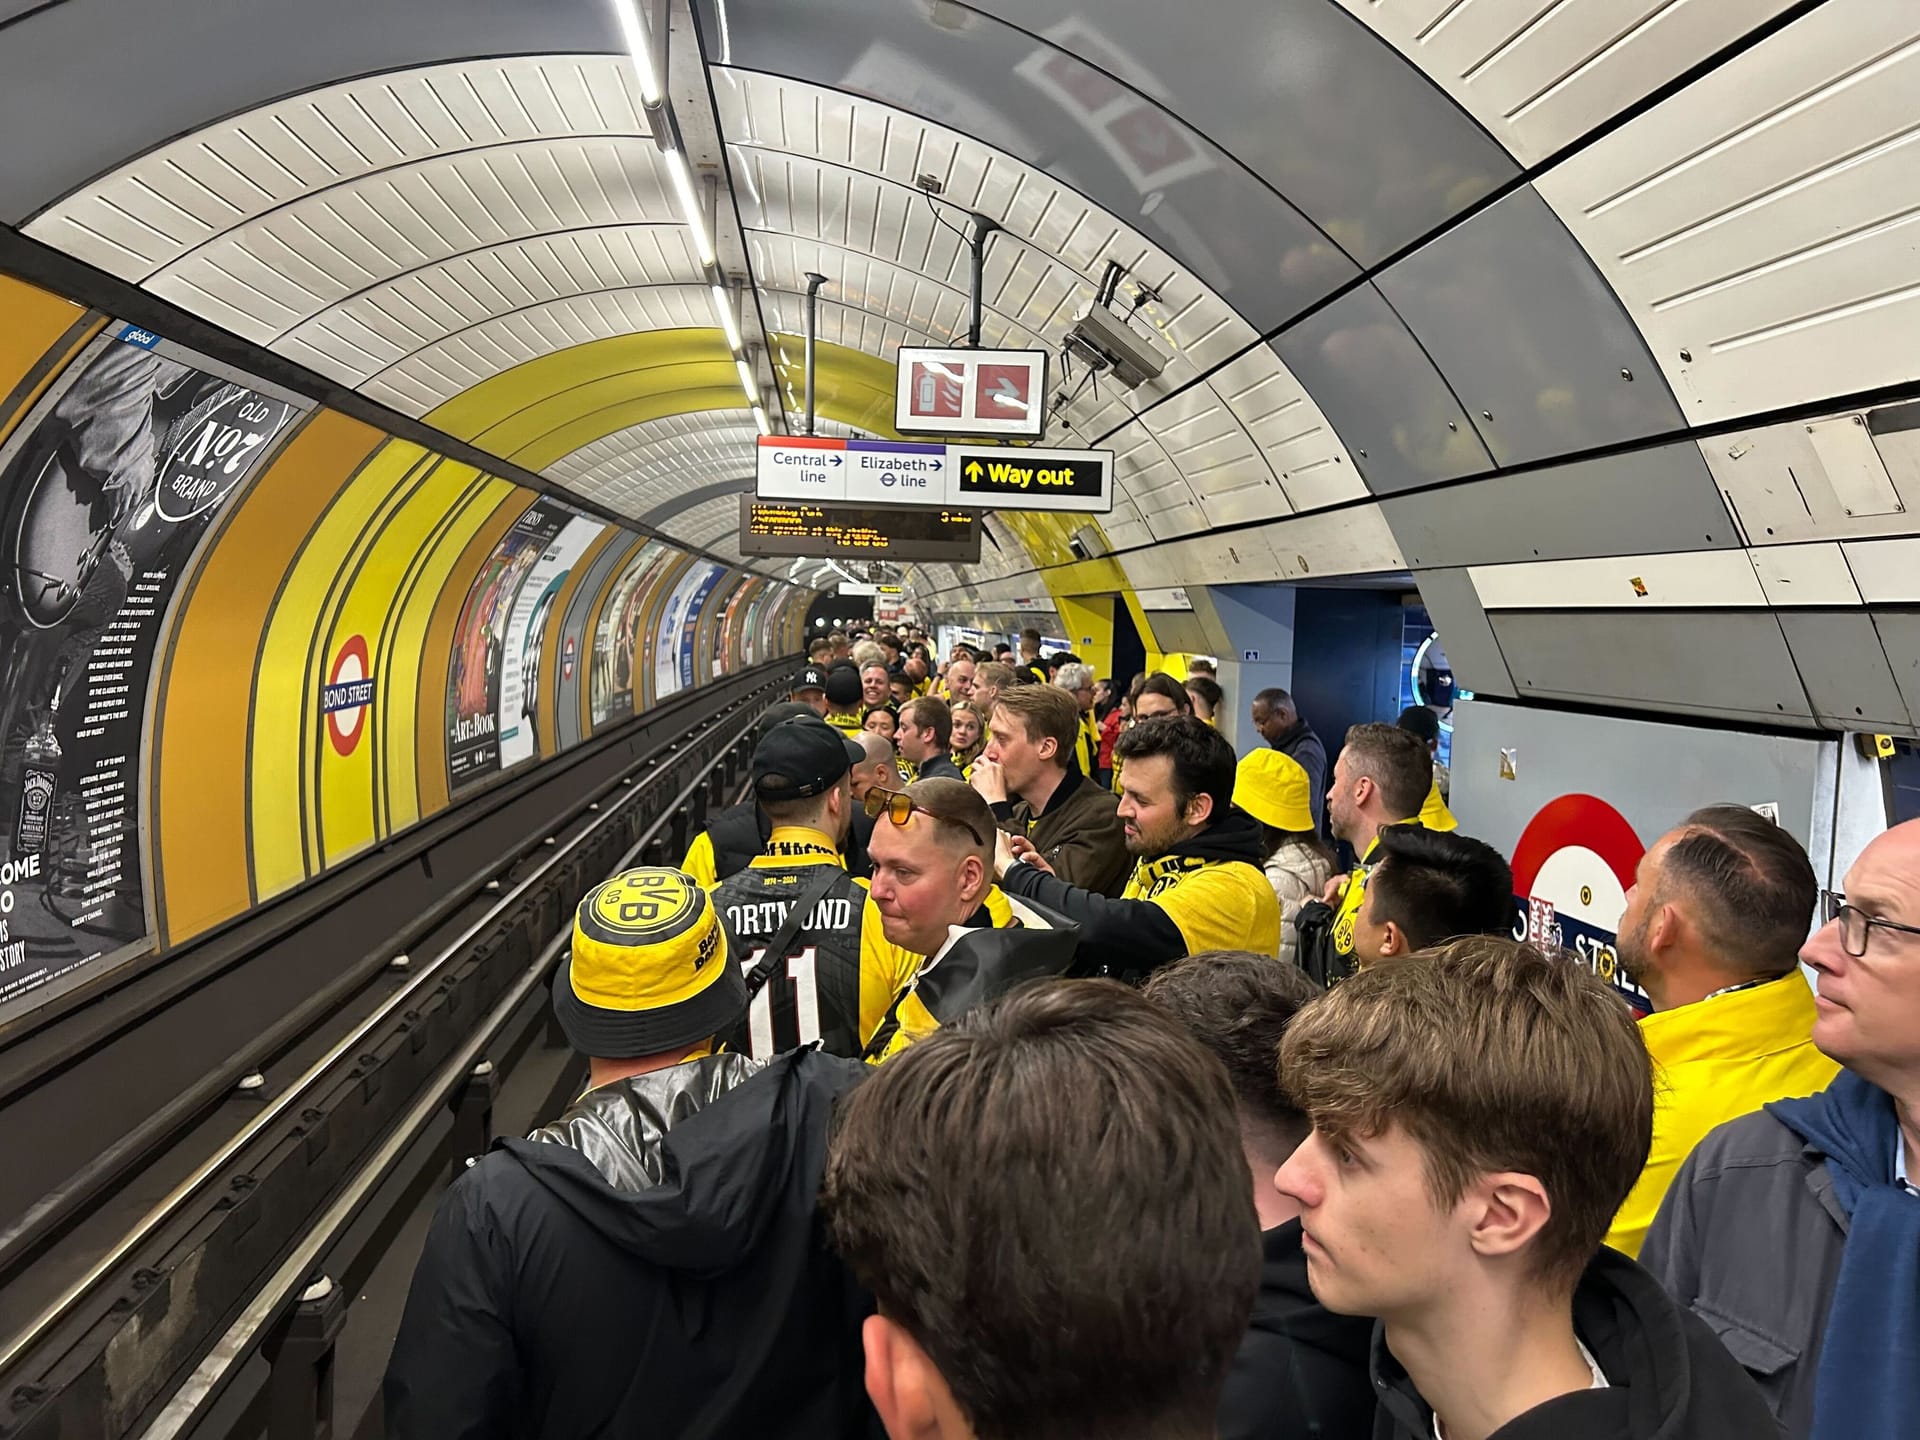 Der überfüllte Bahnsteig an der Bond Street: Die BVB-Fans vertrieben sich die Zeit mit Gesängen.